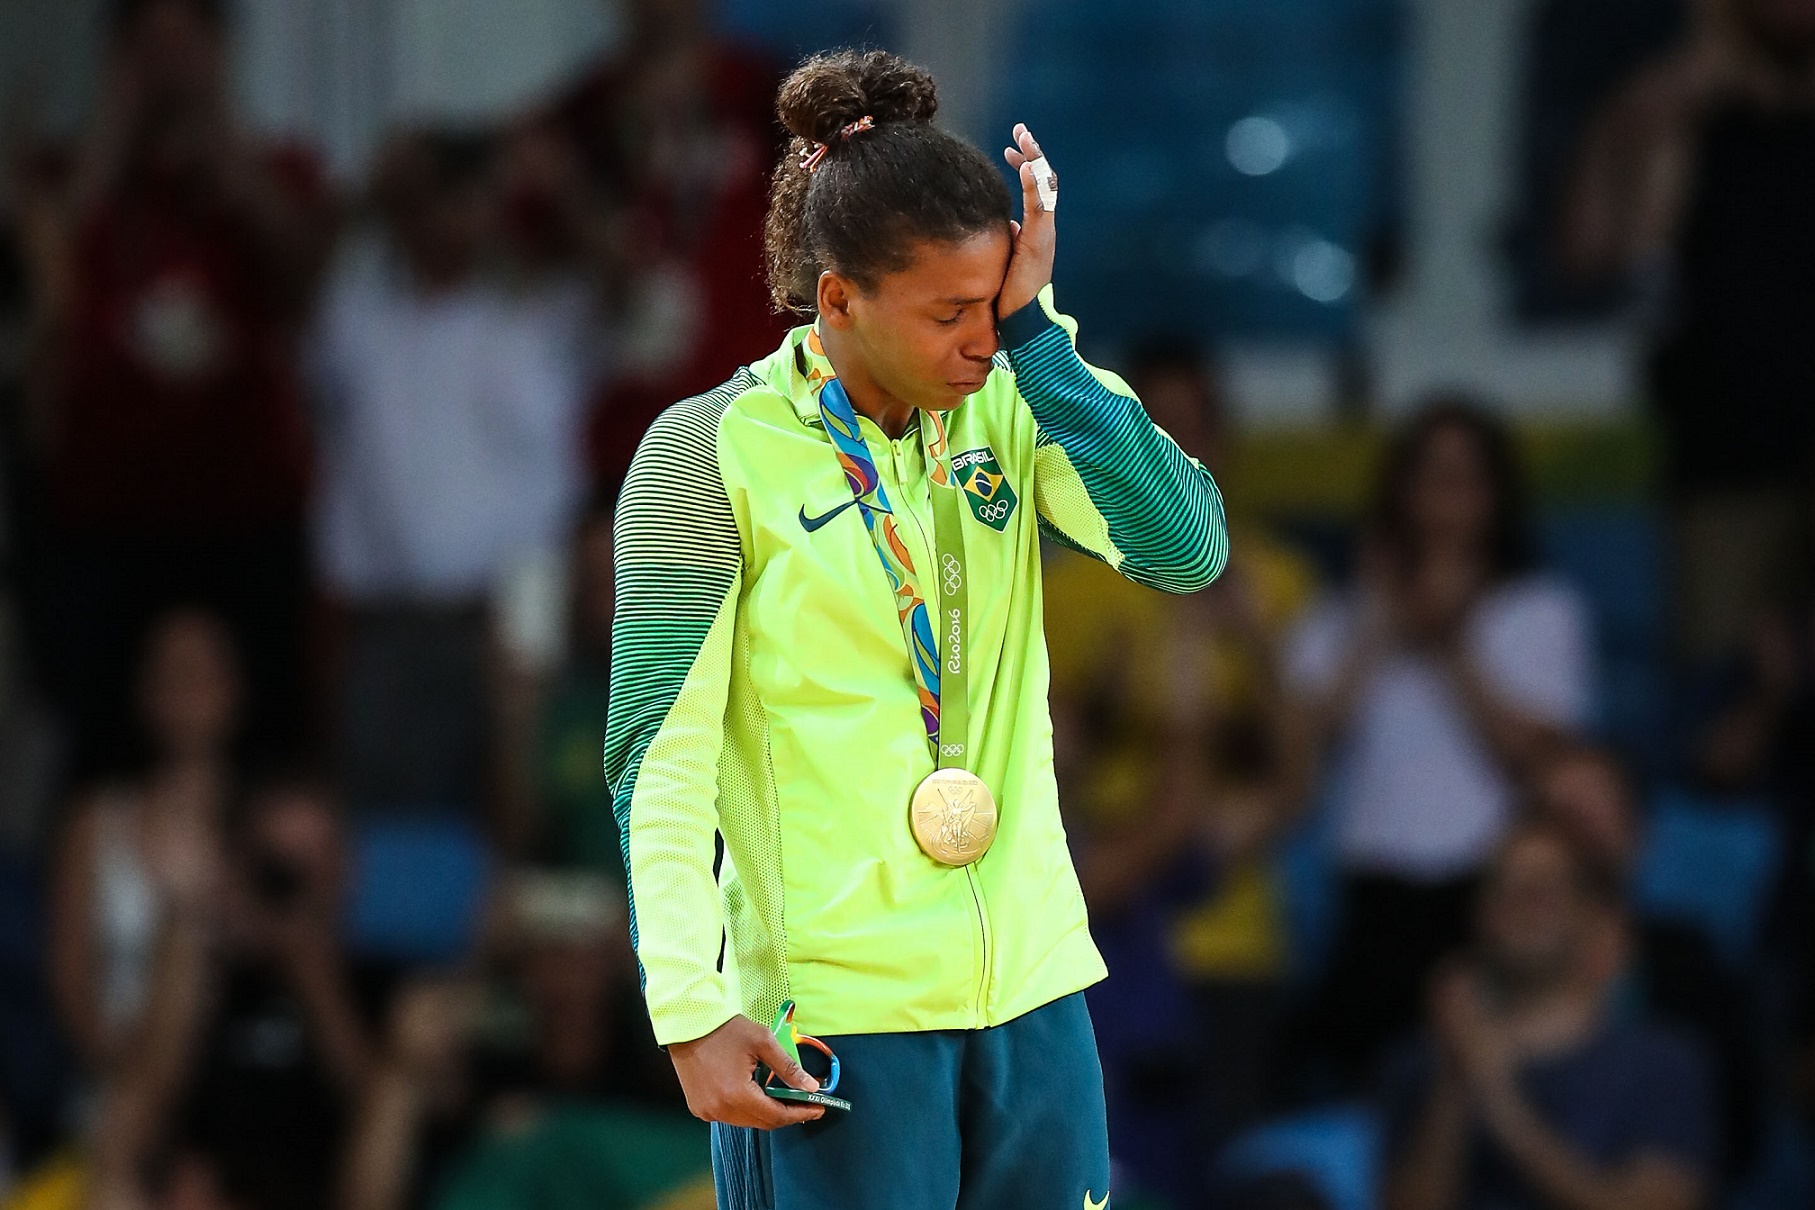 Rafaela Silva, medalha de ouro no judô, veio da Cidade de Deus, que tem um dos índices de progresso social mais baixos da cidade. Foto de Vanderlei Almeida/AFP